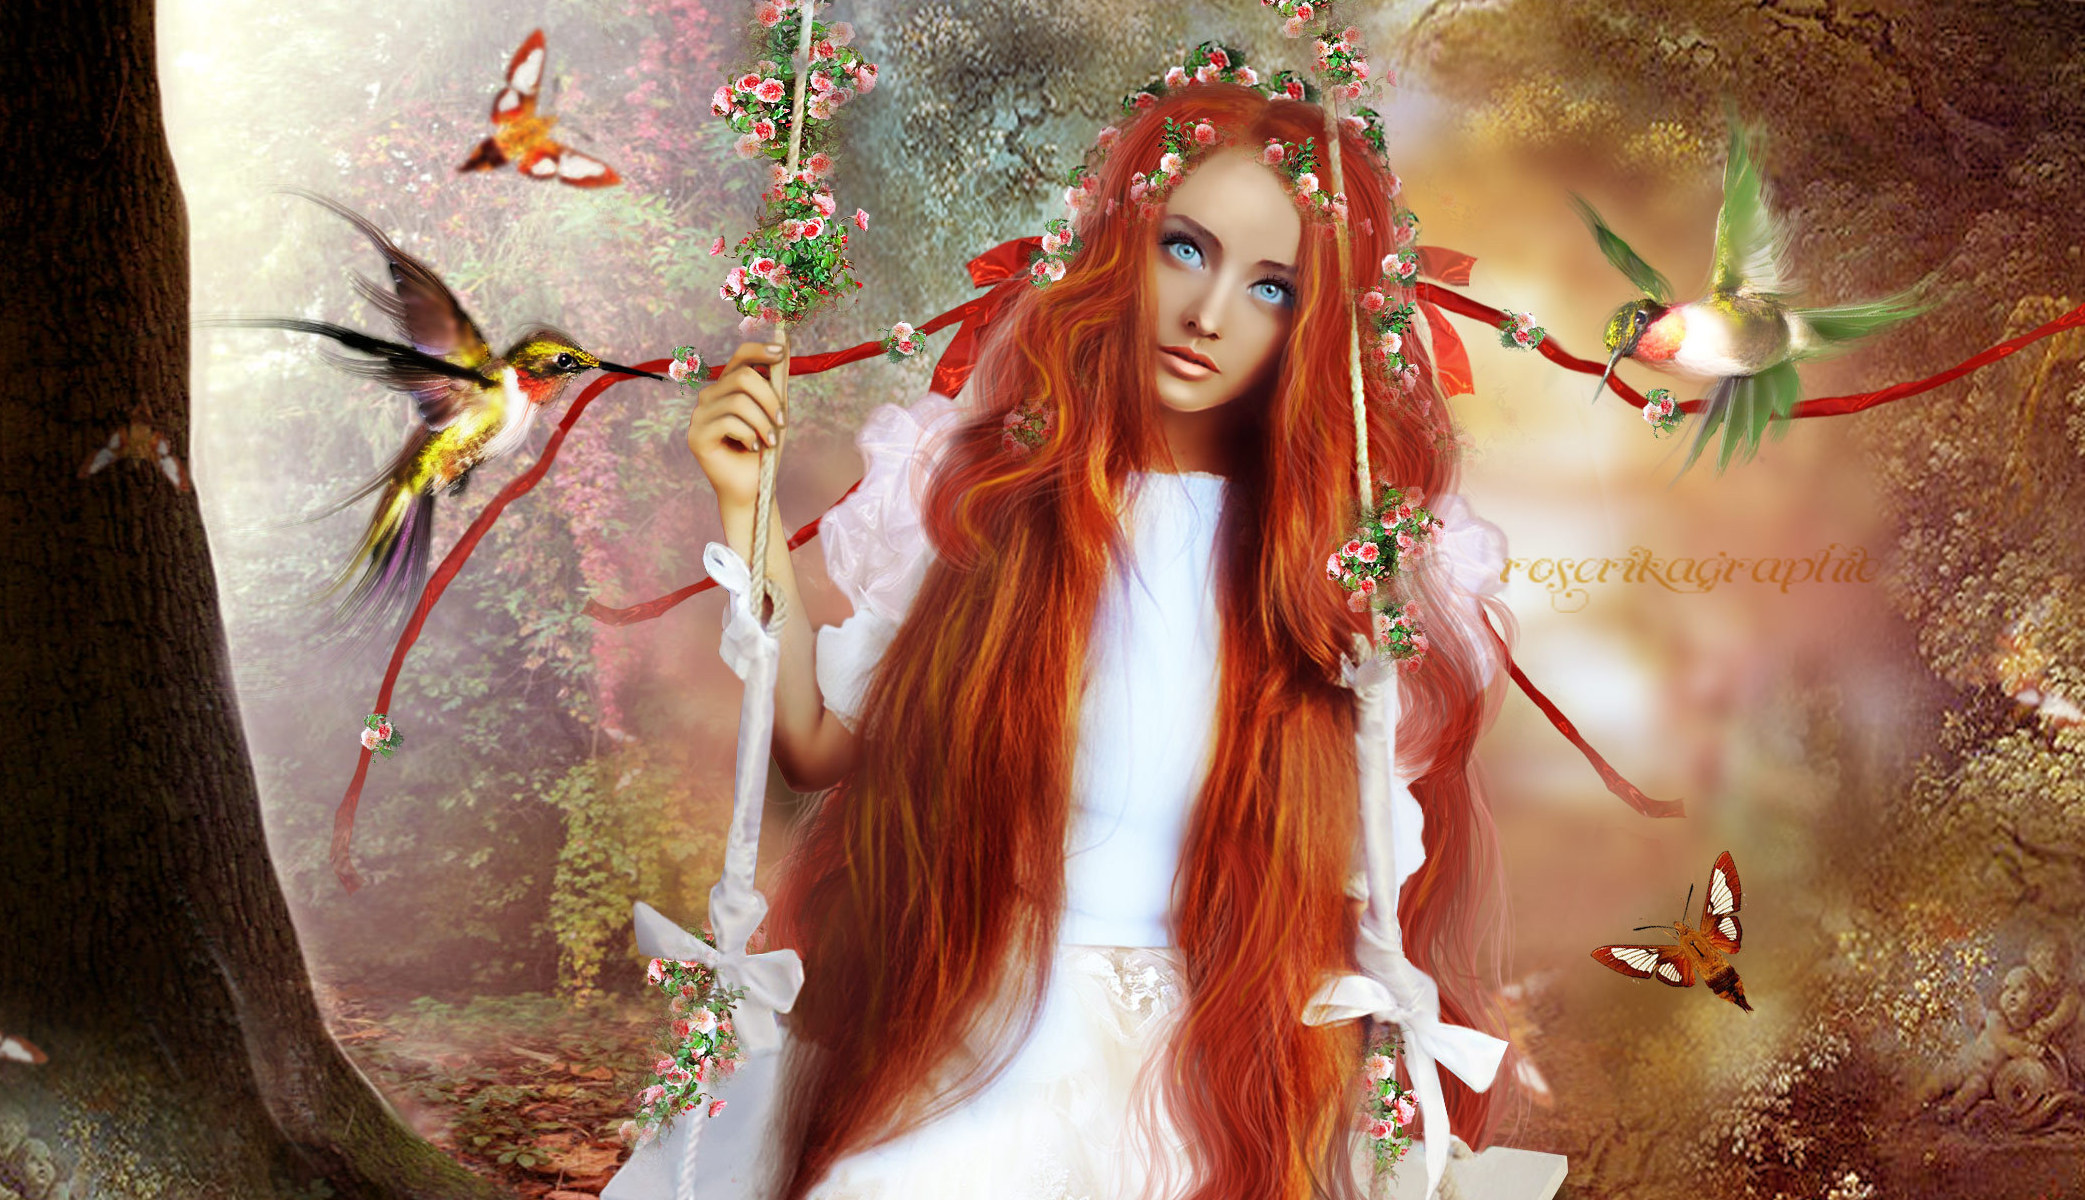 redhead, Mood, Bird, Butterfly, Forest, Girl Wallpaper